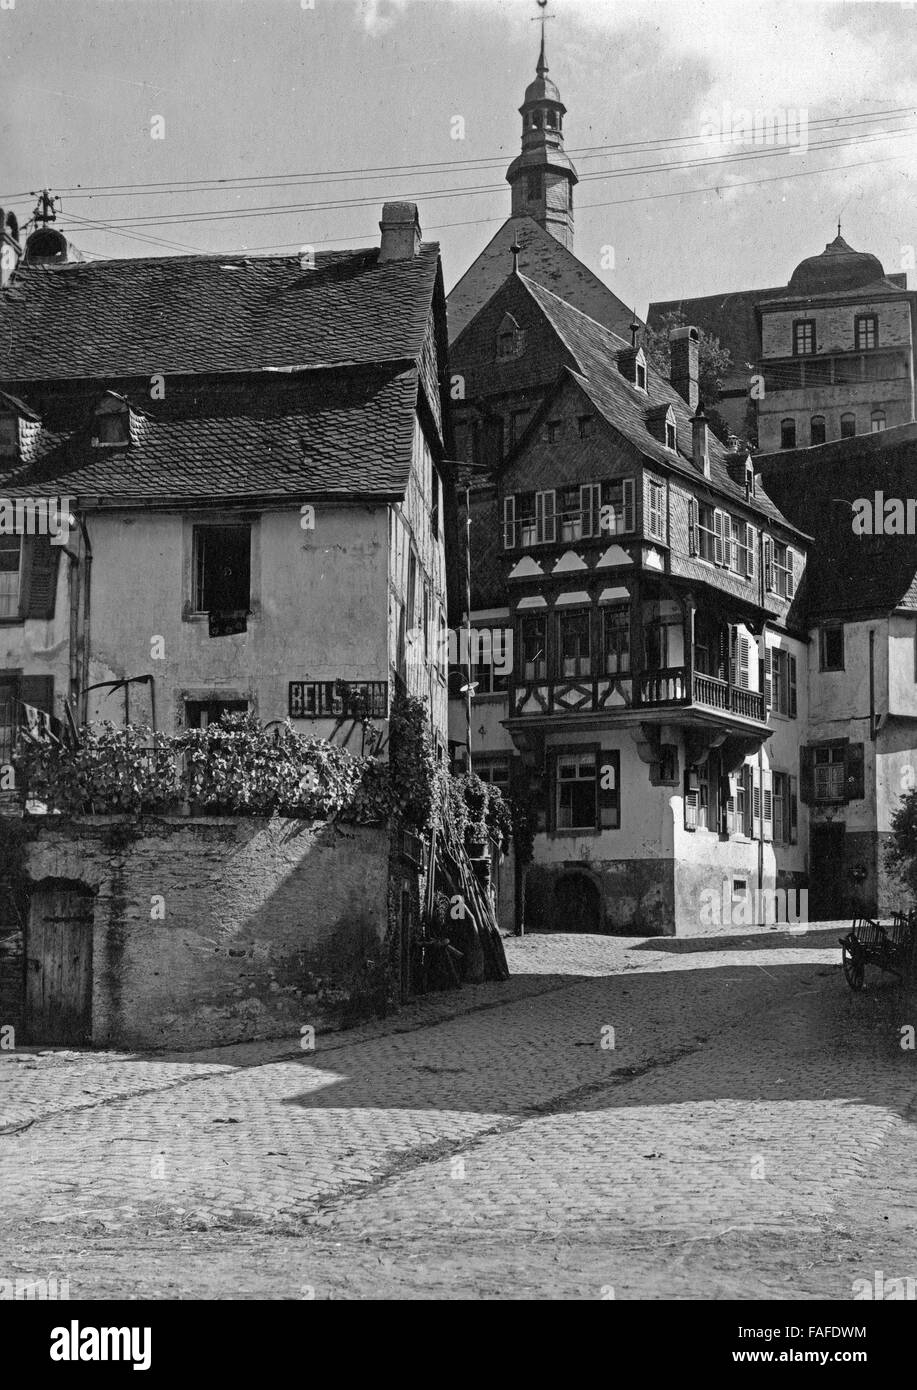 Gassen in Beilstein an der Mosel, Deutschland, 1930er Jahre. Fachwerkhäuser in Beilstein am Fluss Mosel, Deutschland der 1930er Jahre. Stockfoto